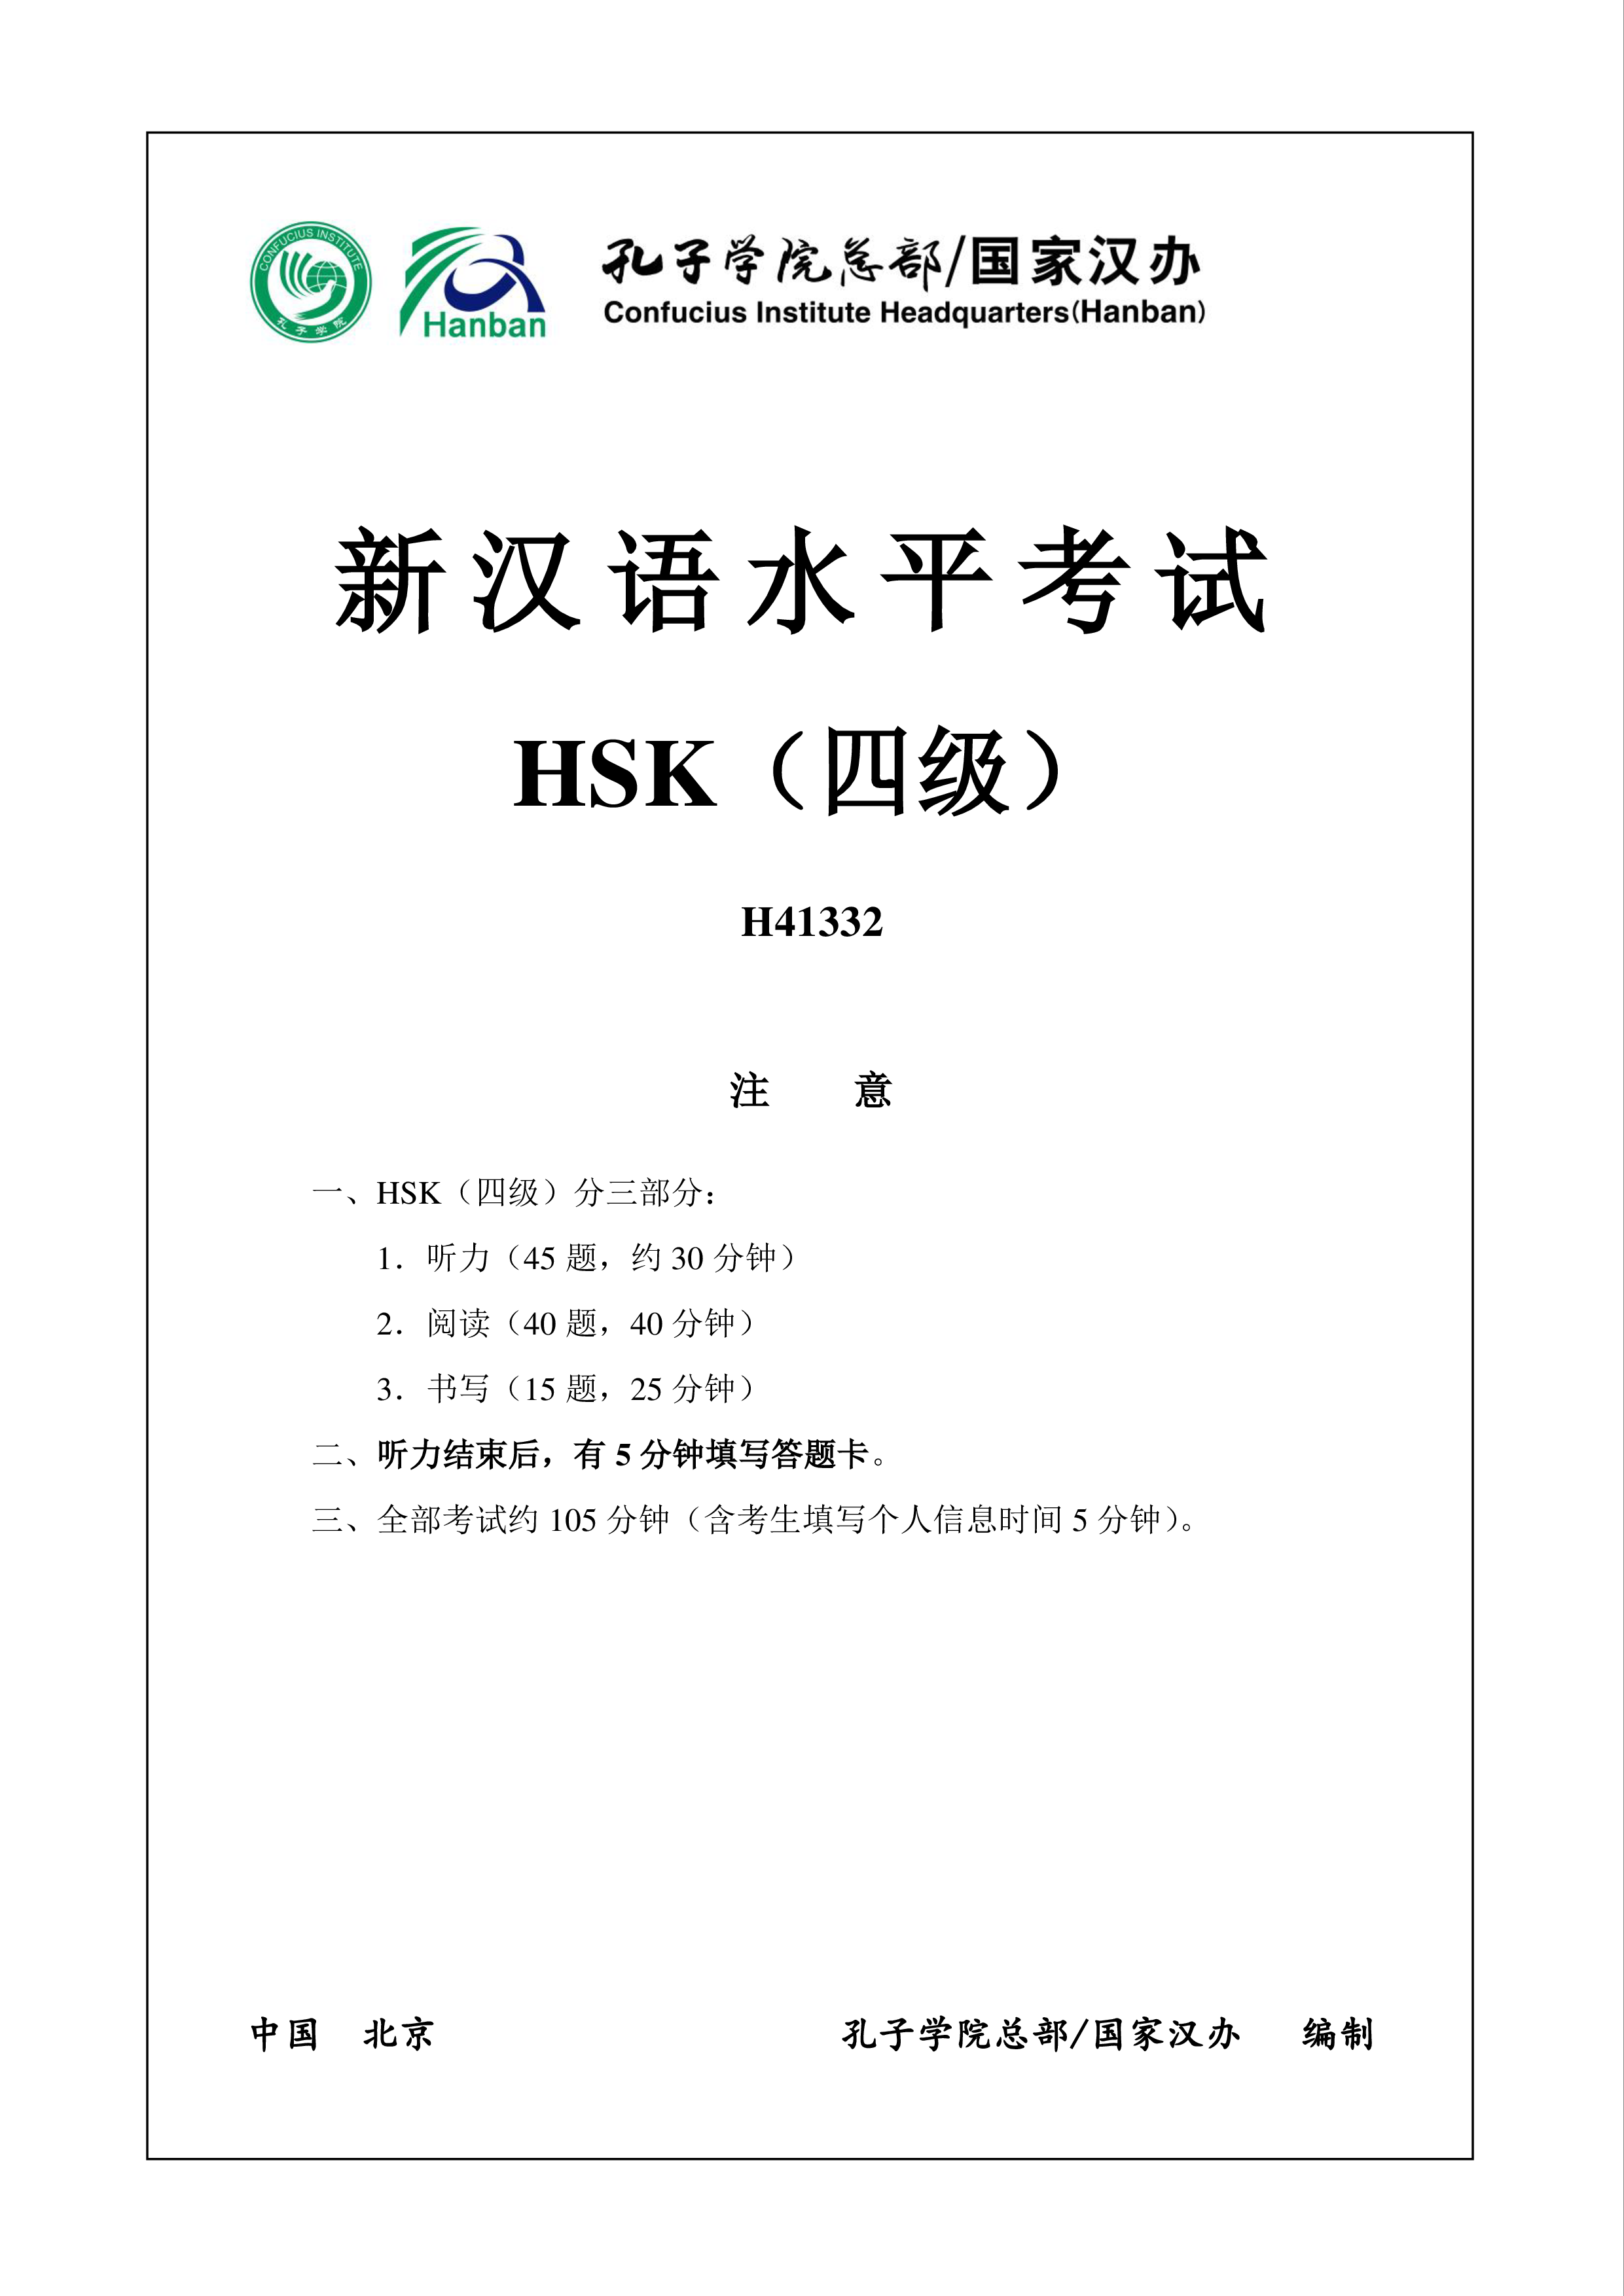 hsk4 chinees examen h41332 plantilla imagen principal